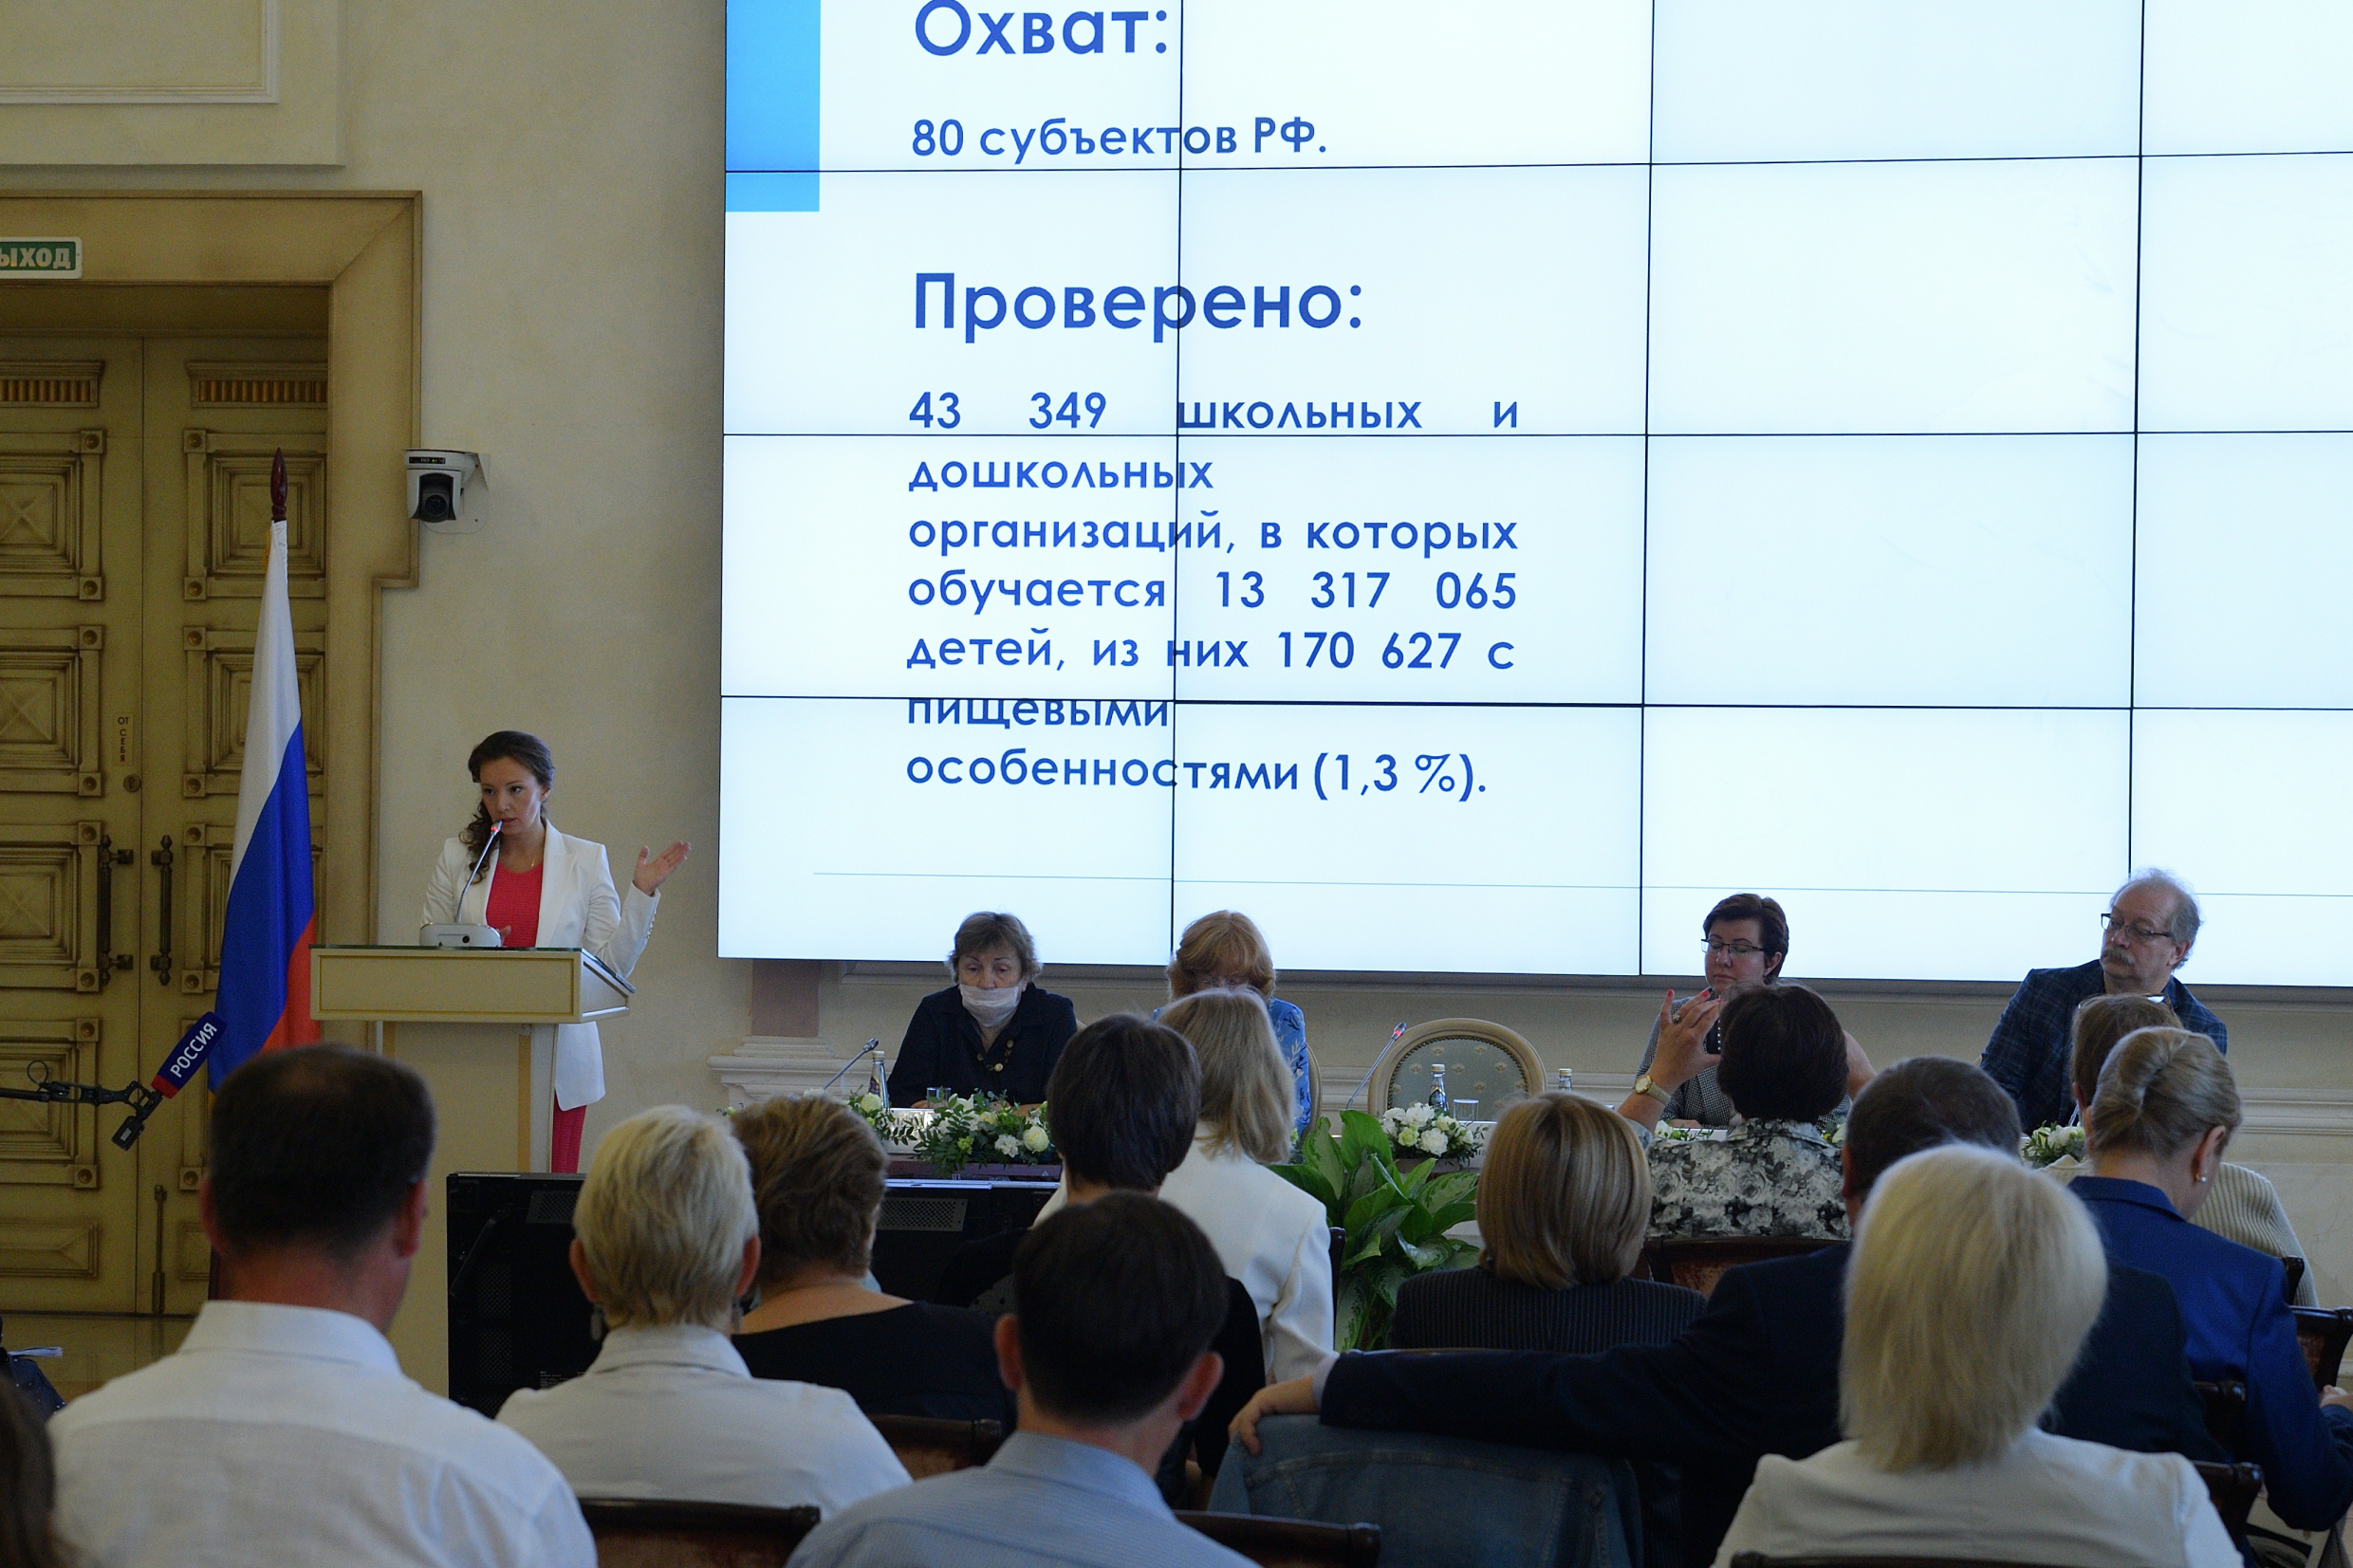 Анна Кузнецова подвела итоги всероссийского мониторинга качества питания детей с пищевыми особенностями  в образовательных организациях